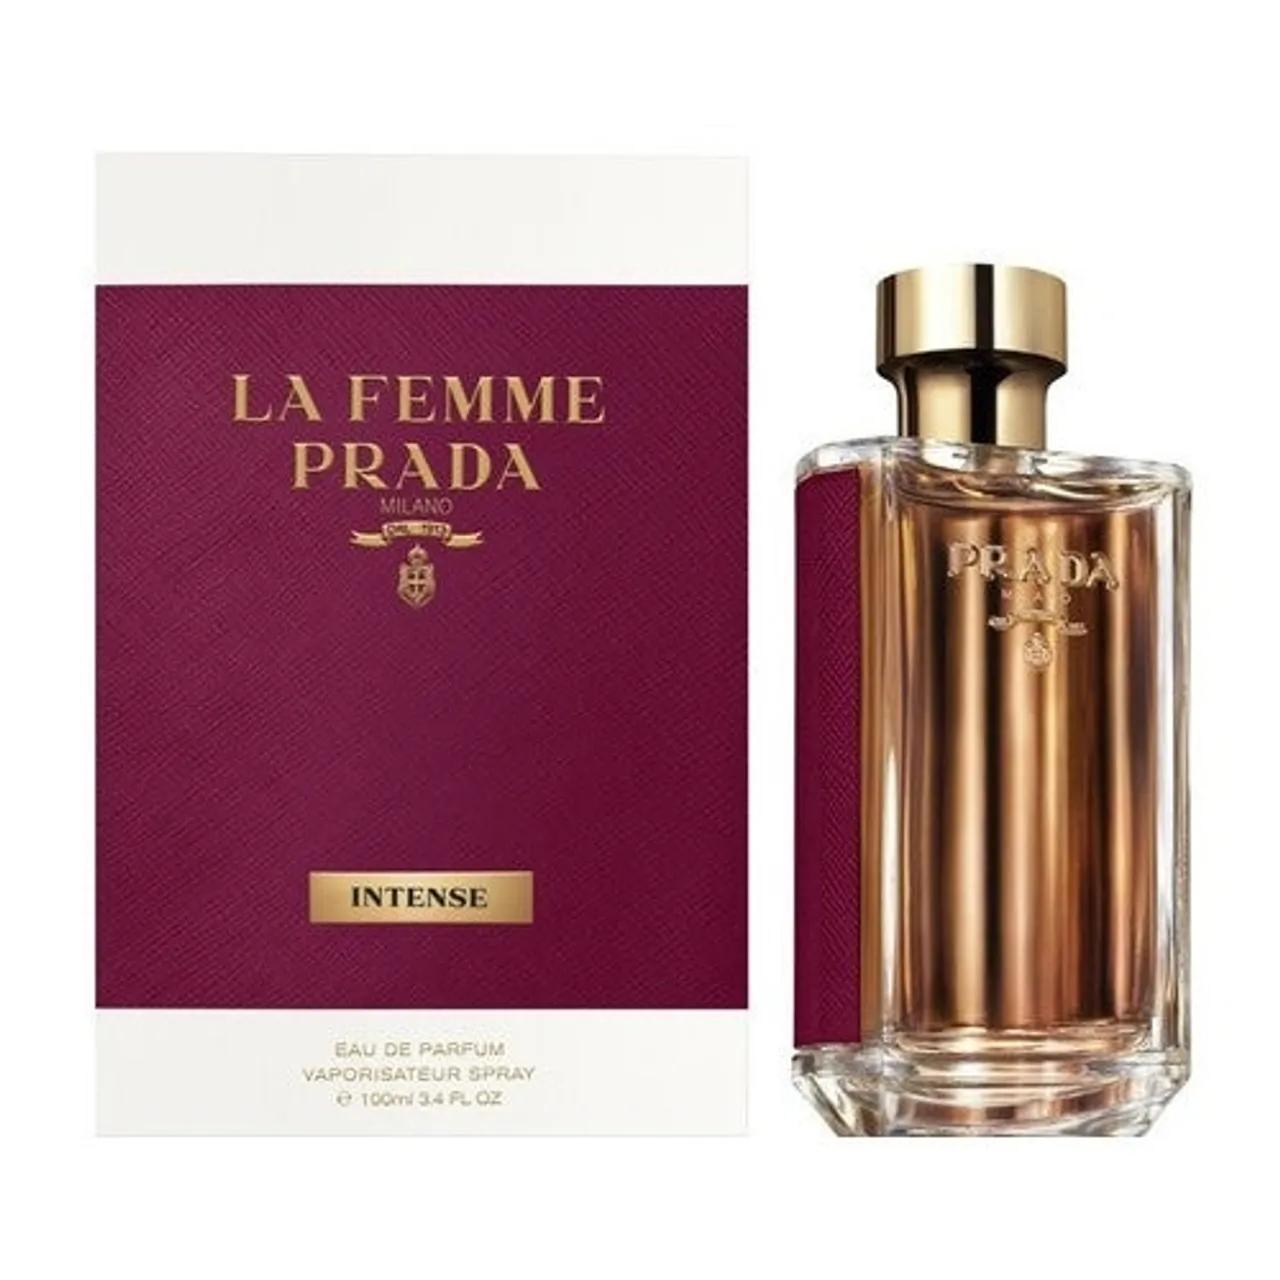 Prada La Femme Prada Intense Eau de Parfum 100 ml